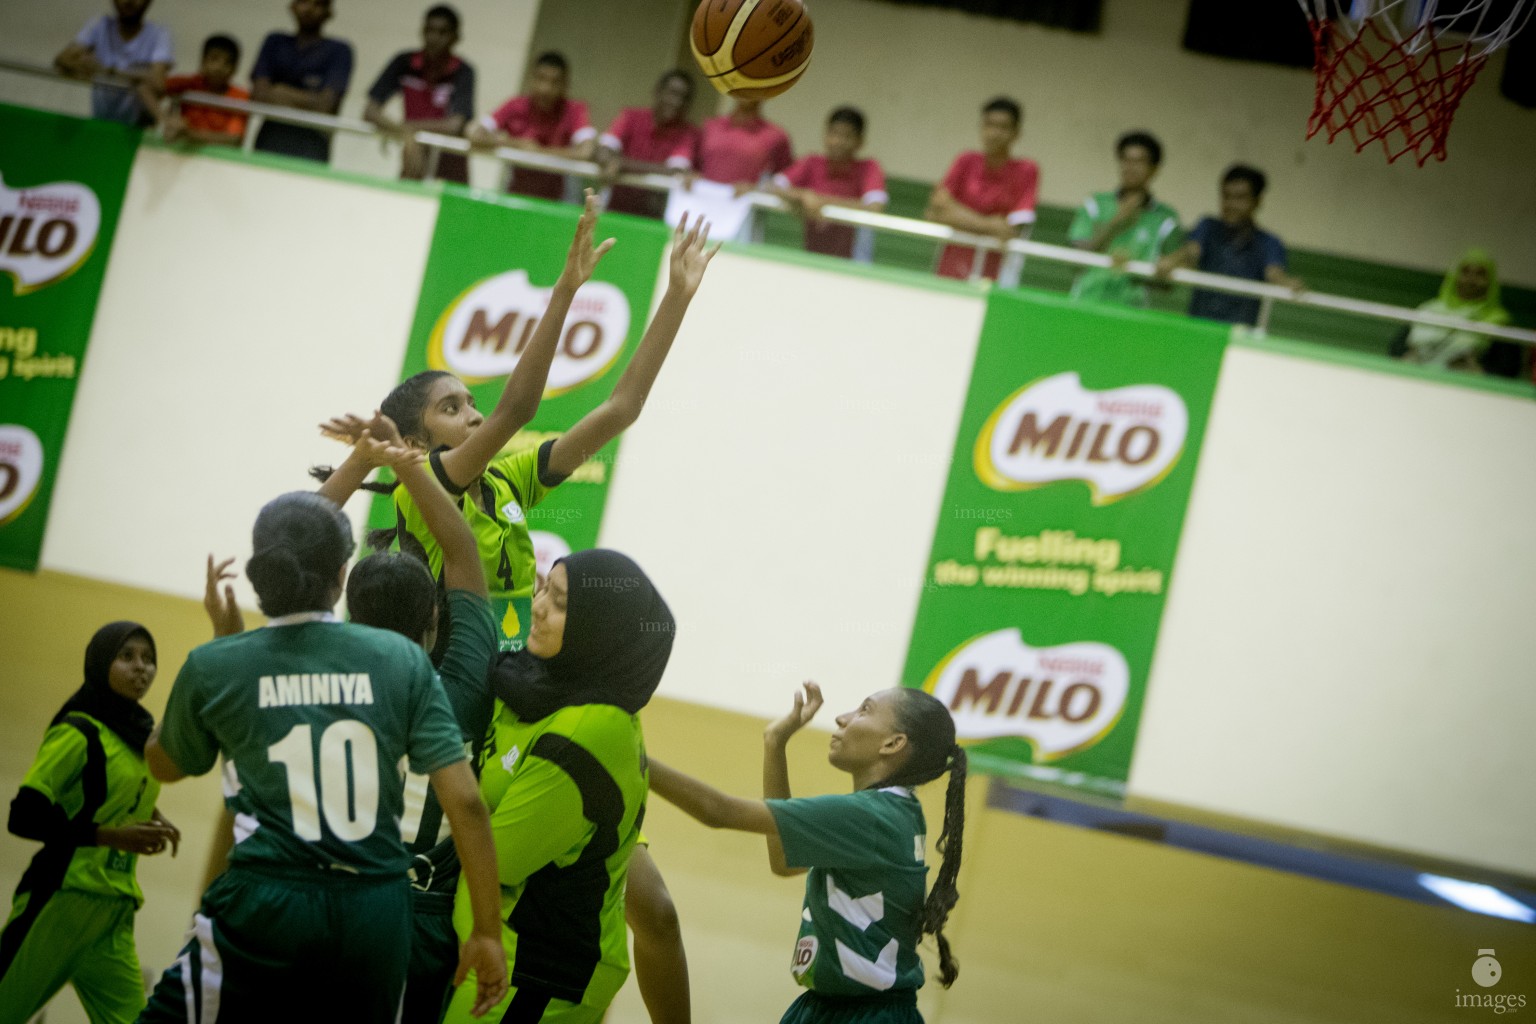 MILO Interschool Basket Tournament 2018 (04th April 2018)